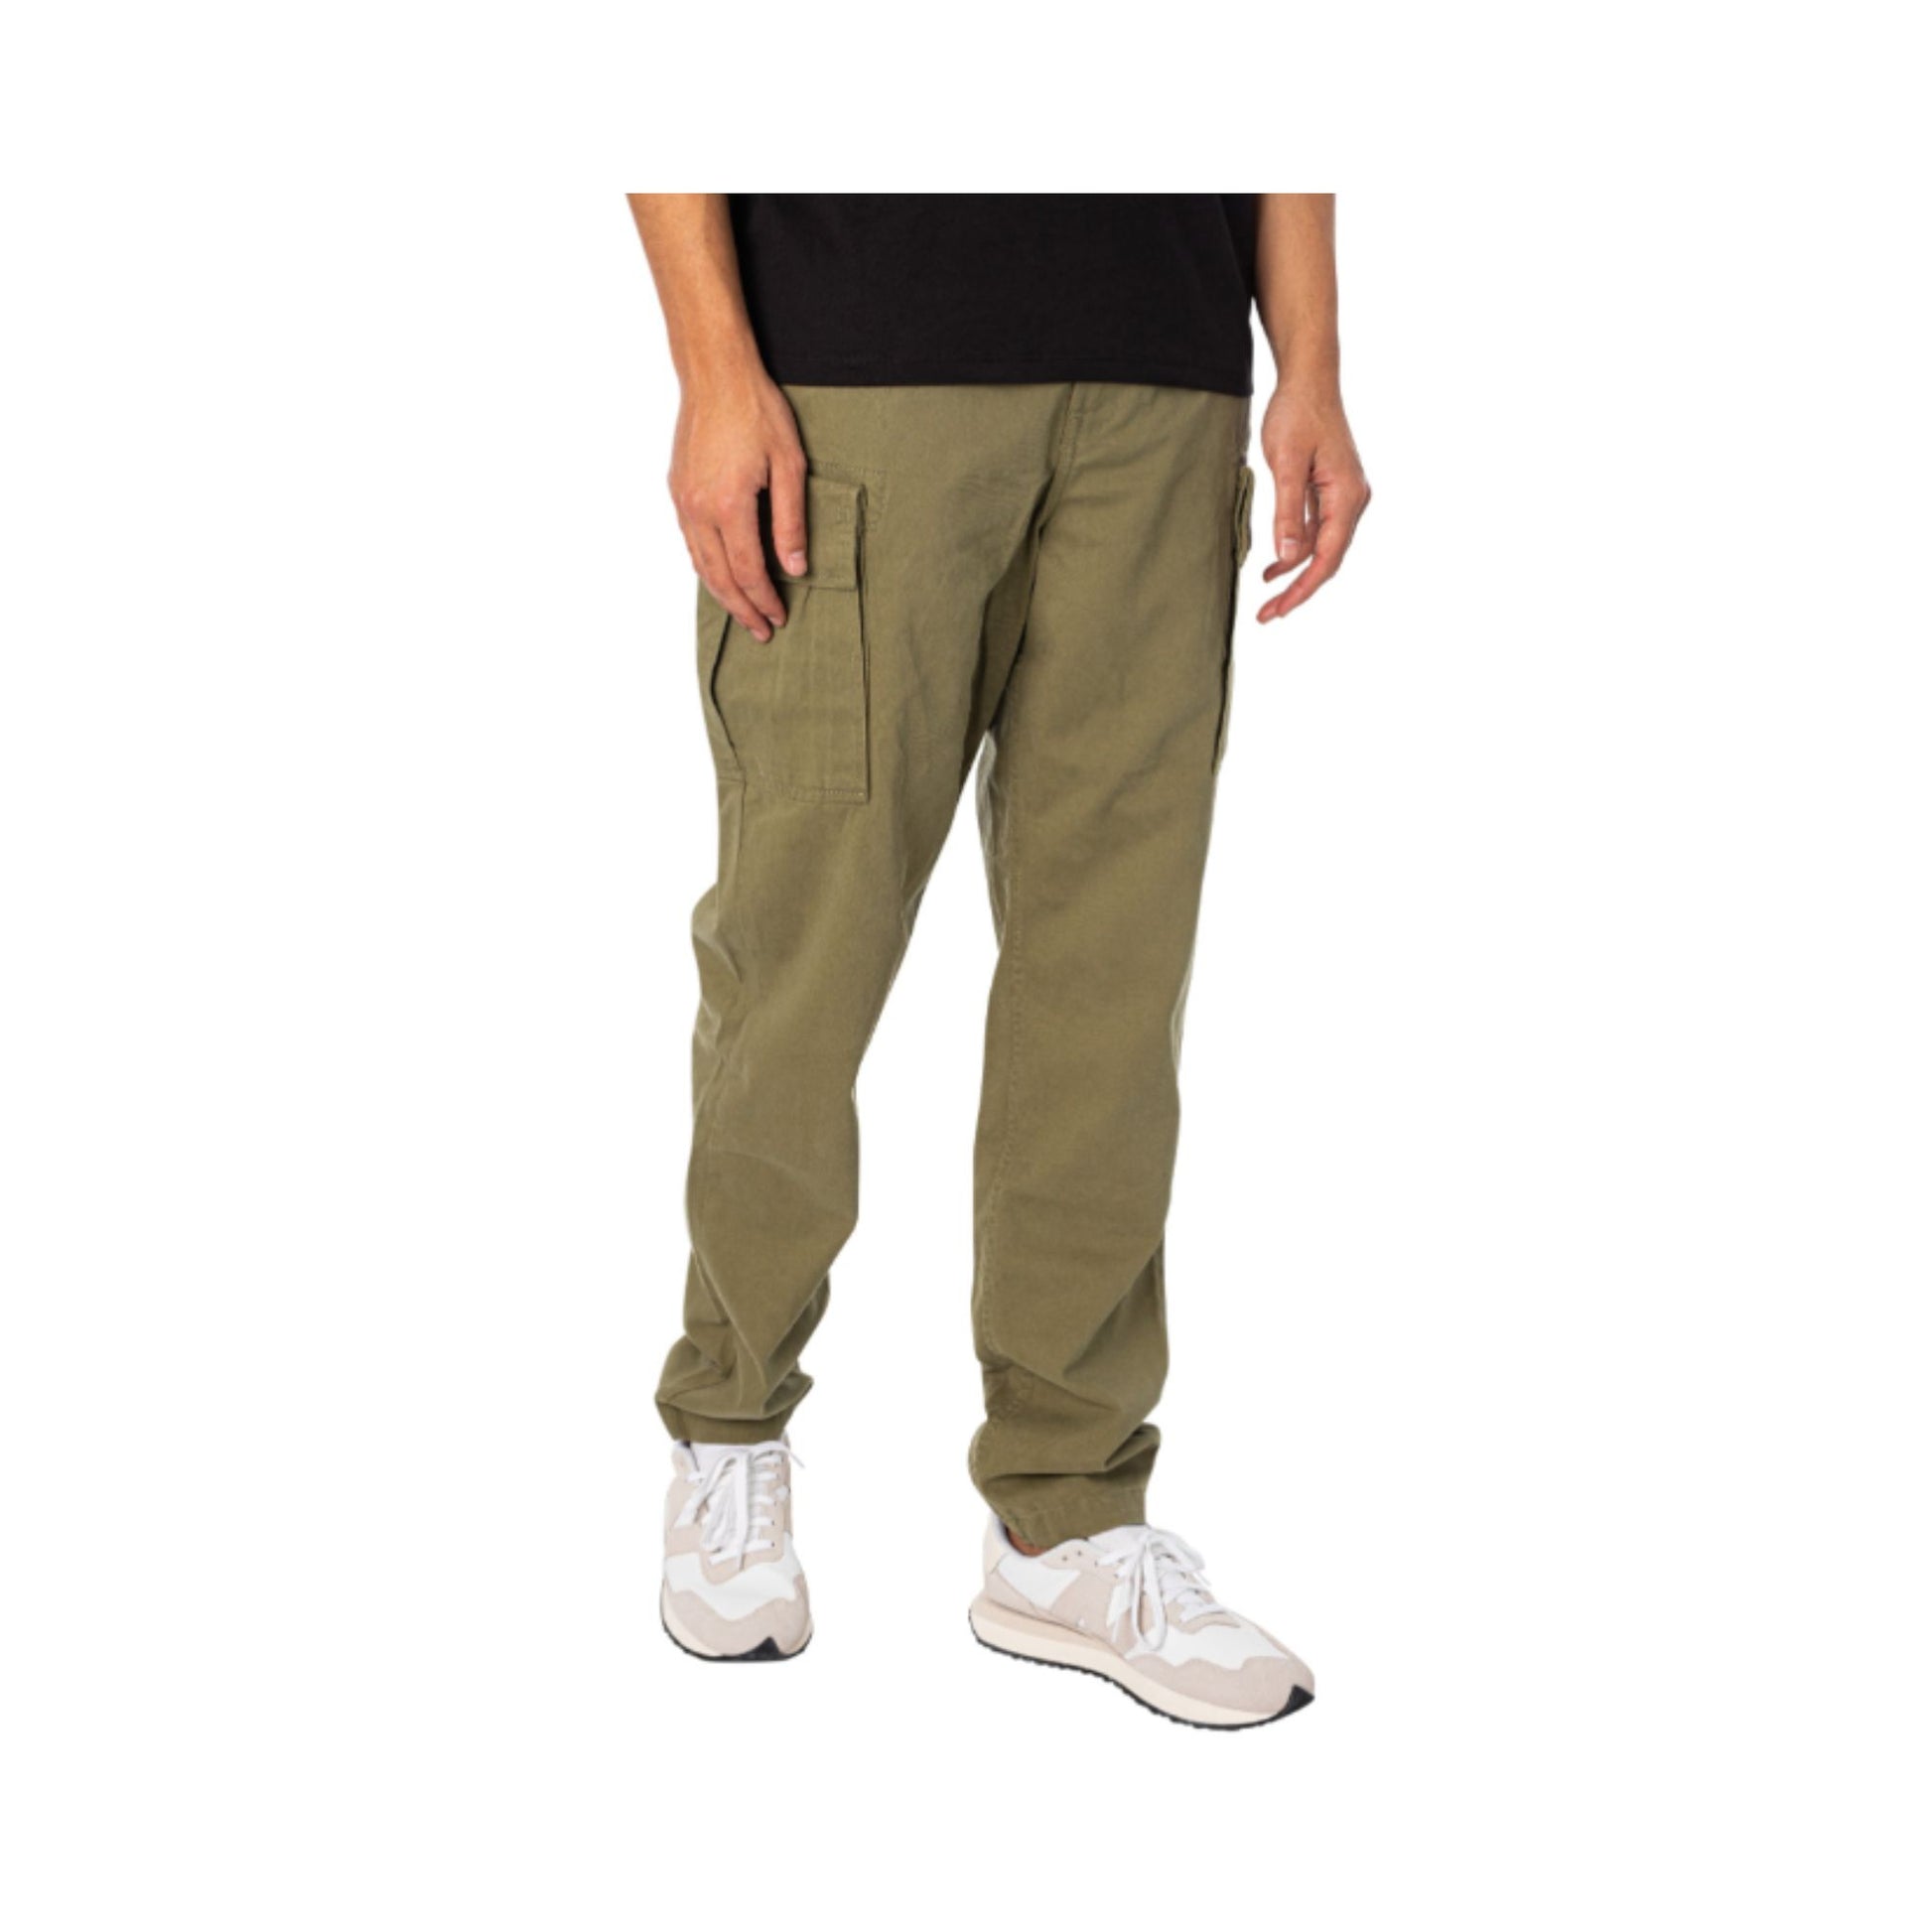 Pantalone con tasche cargo sui lati colore Verde